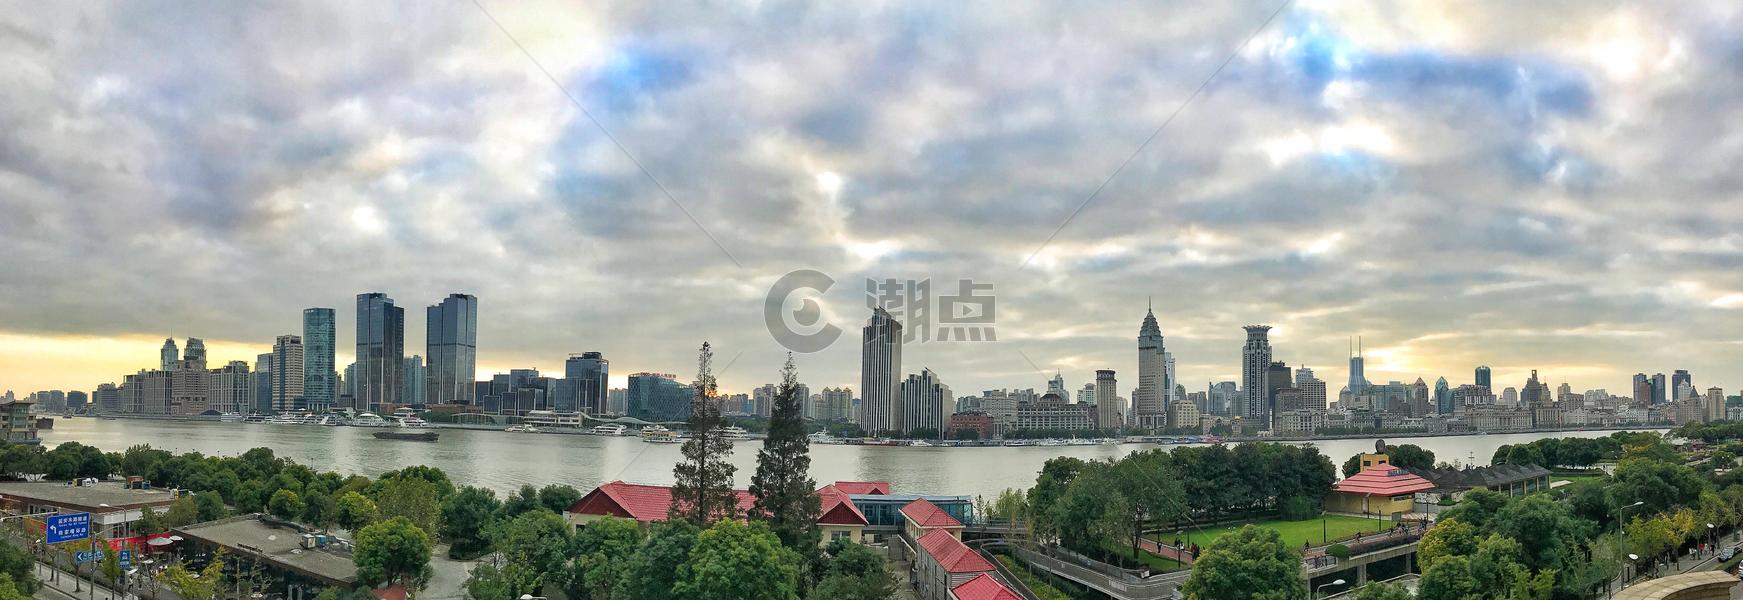 上海浦西江景全景图图片素材免费下载